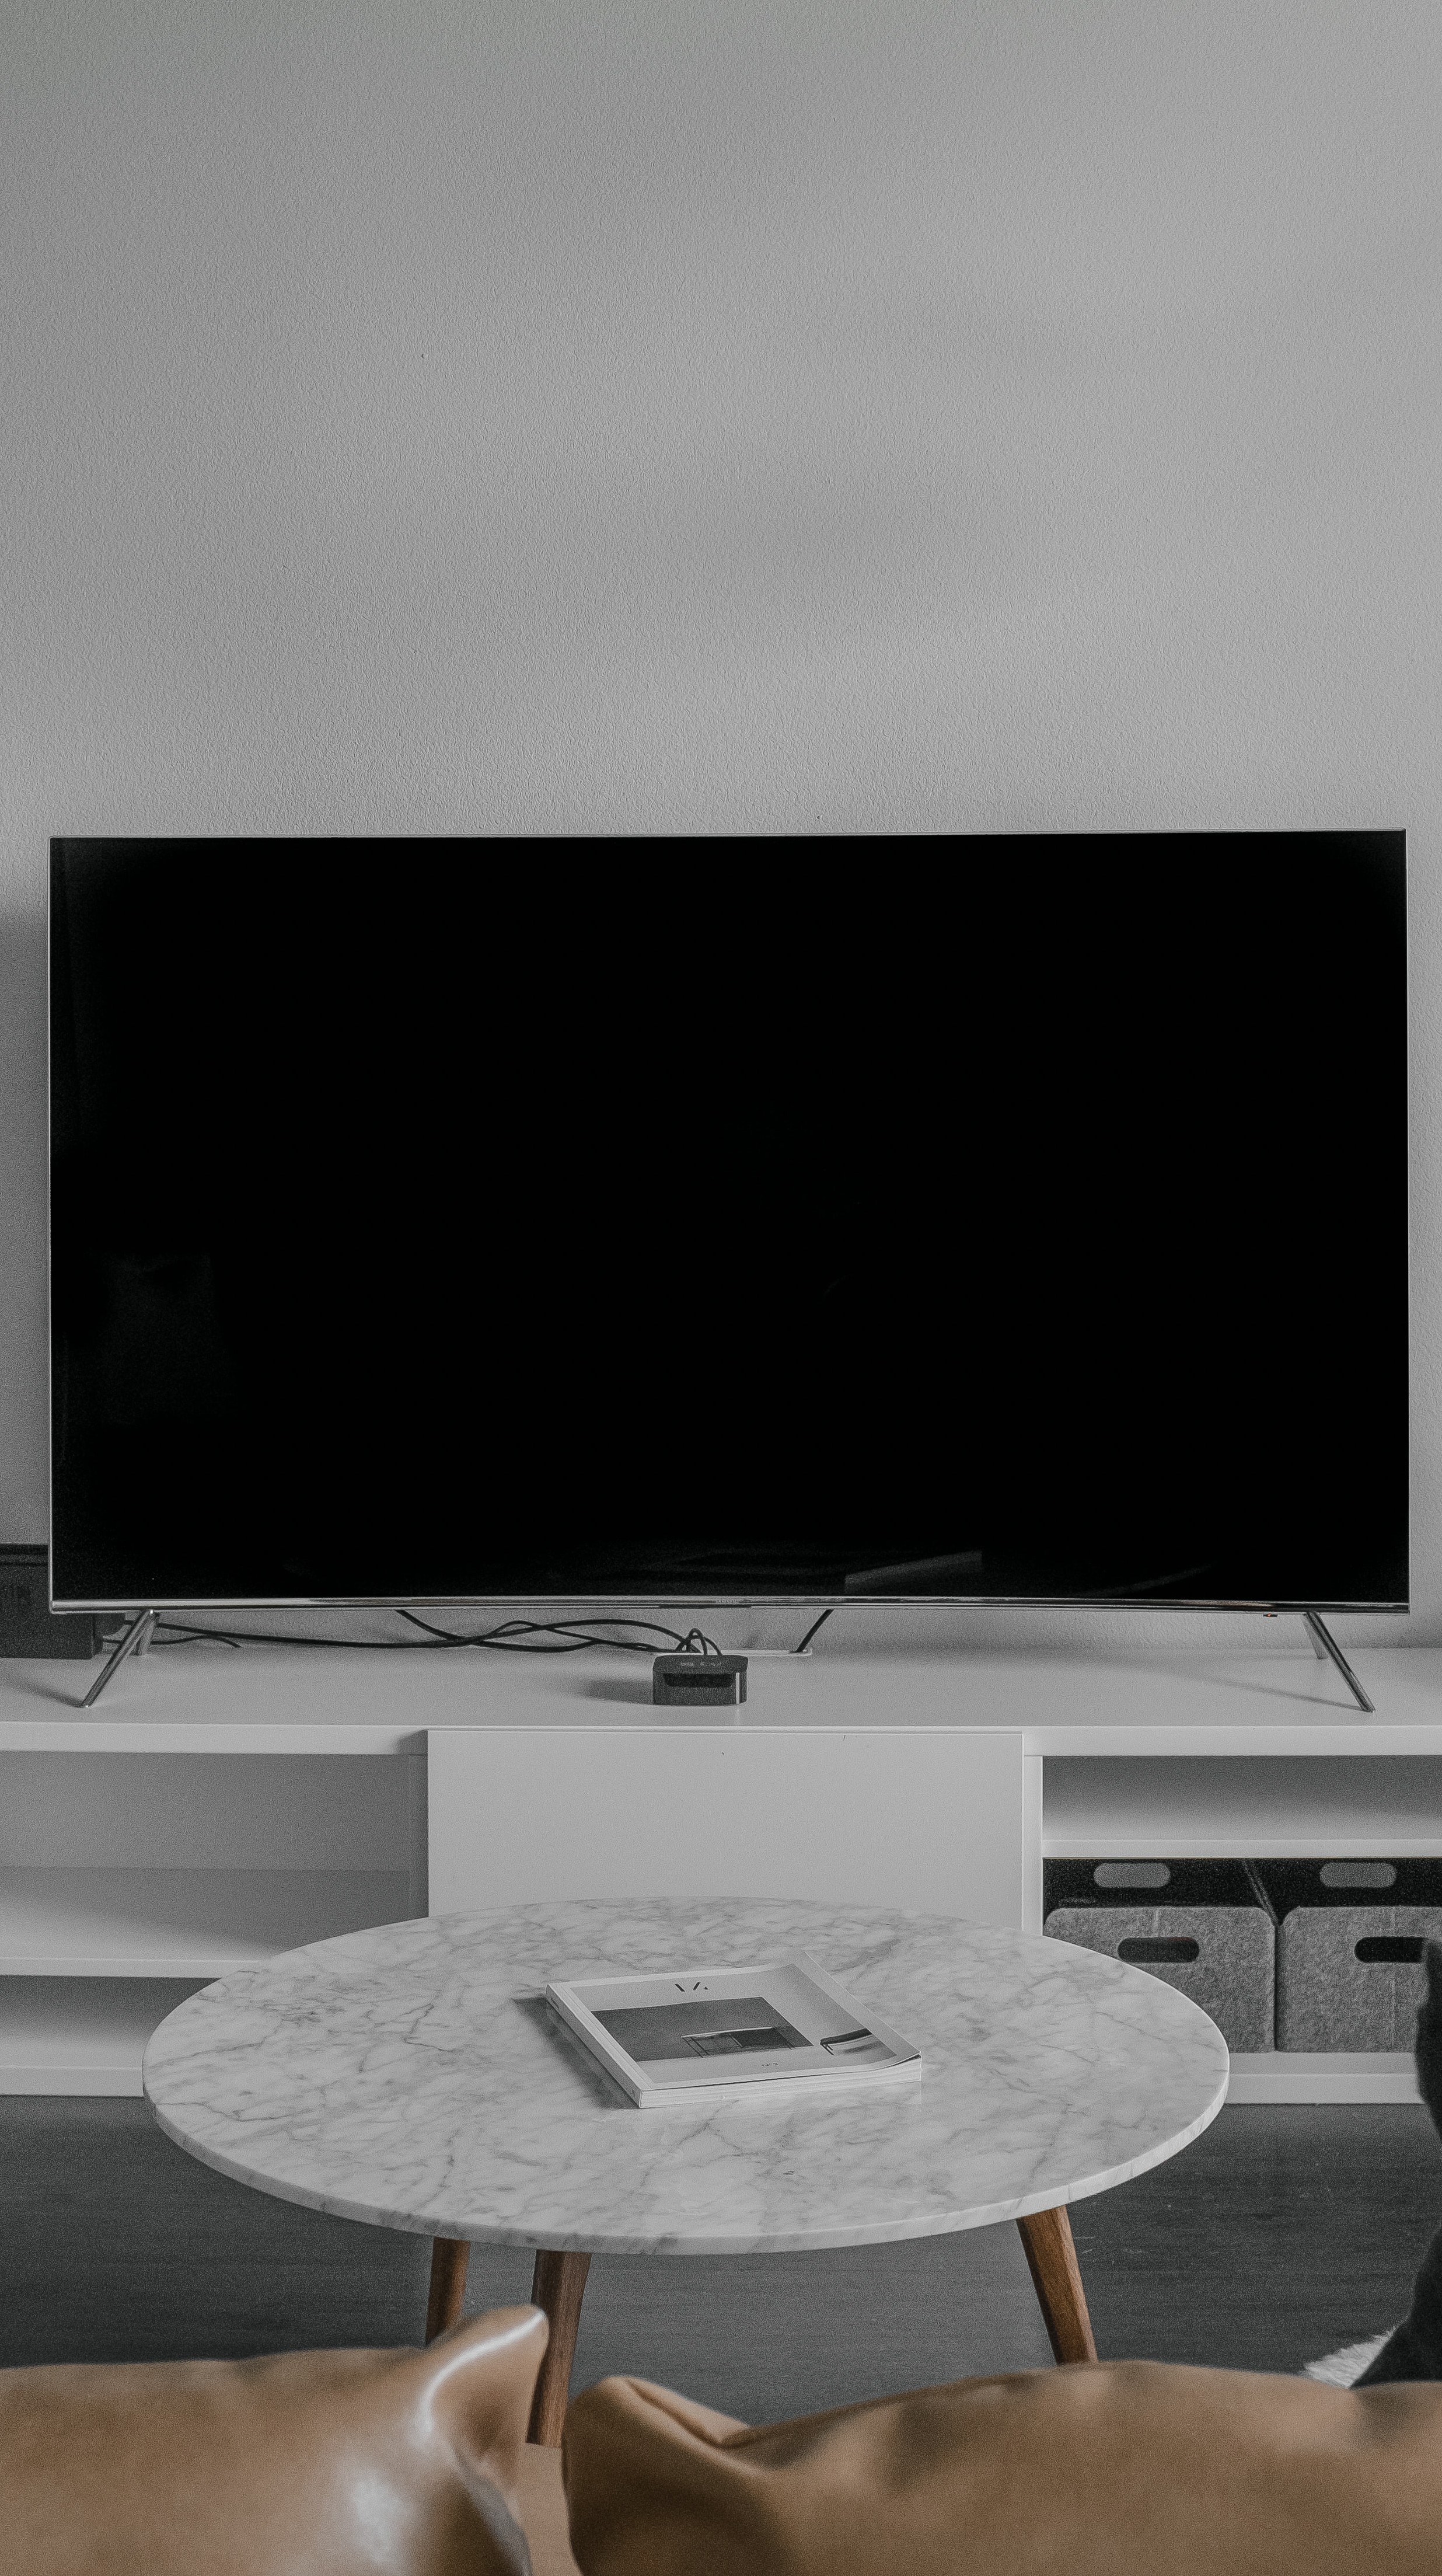 5 coisas que a sua Smart TV sabe sobre você e como se proteger